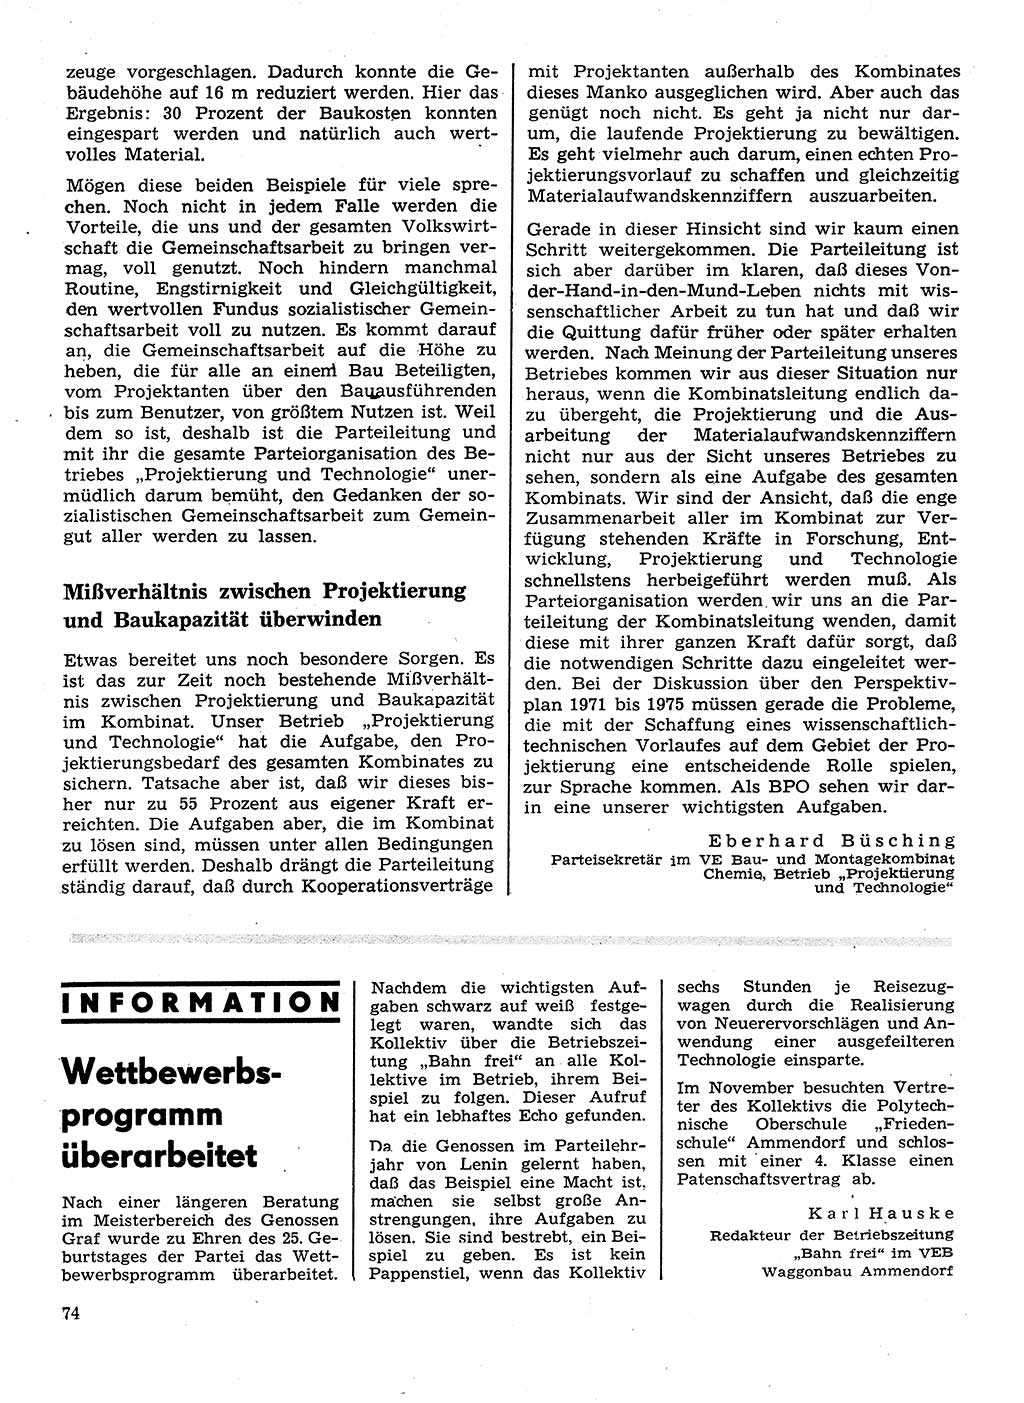 Neuer Weg (NW), Organ des Zentralkomitees (ZK) der SED (Sozialistische Einheitspartei Deutschlands) für Fragen des Parteilebens, 26. Jahrgang [Deutsche Demokratische Republik (DDR)] 1971, Seite 74 (NW ZK SED DDR 1971, S. 74)